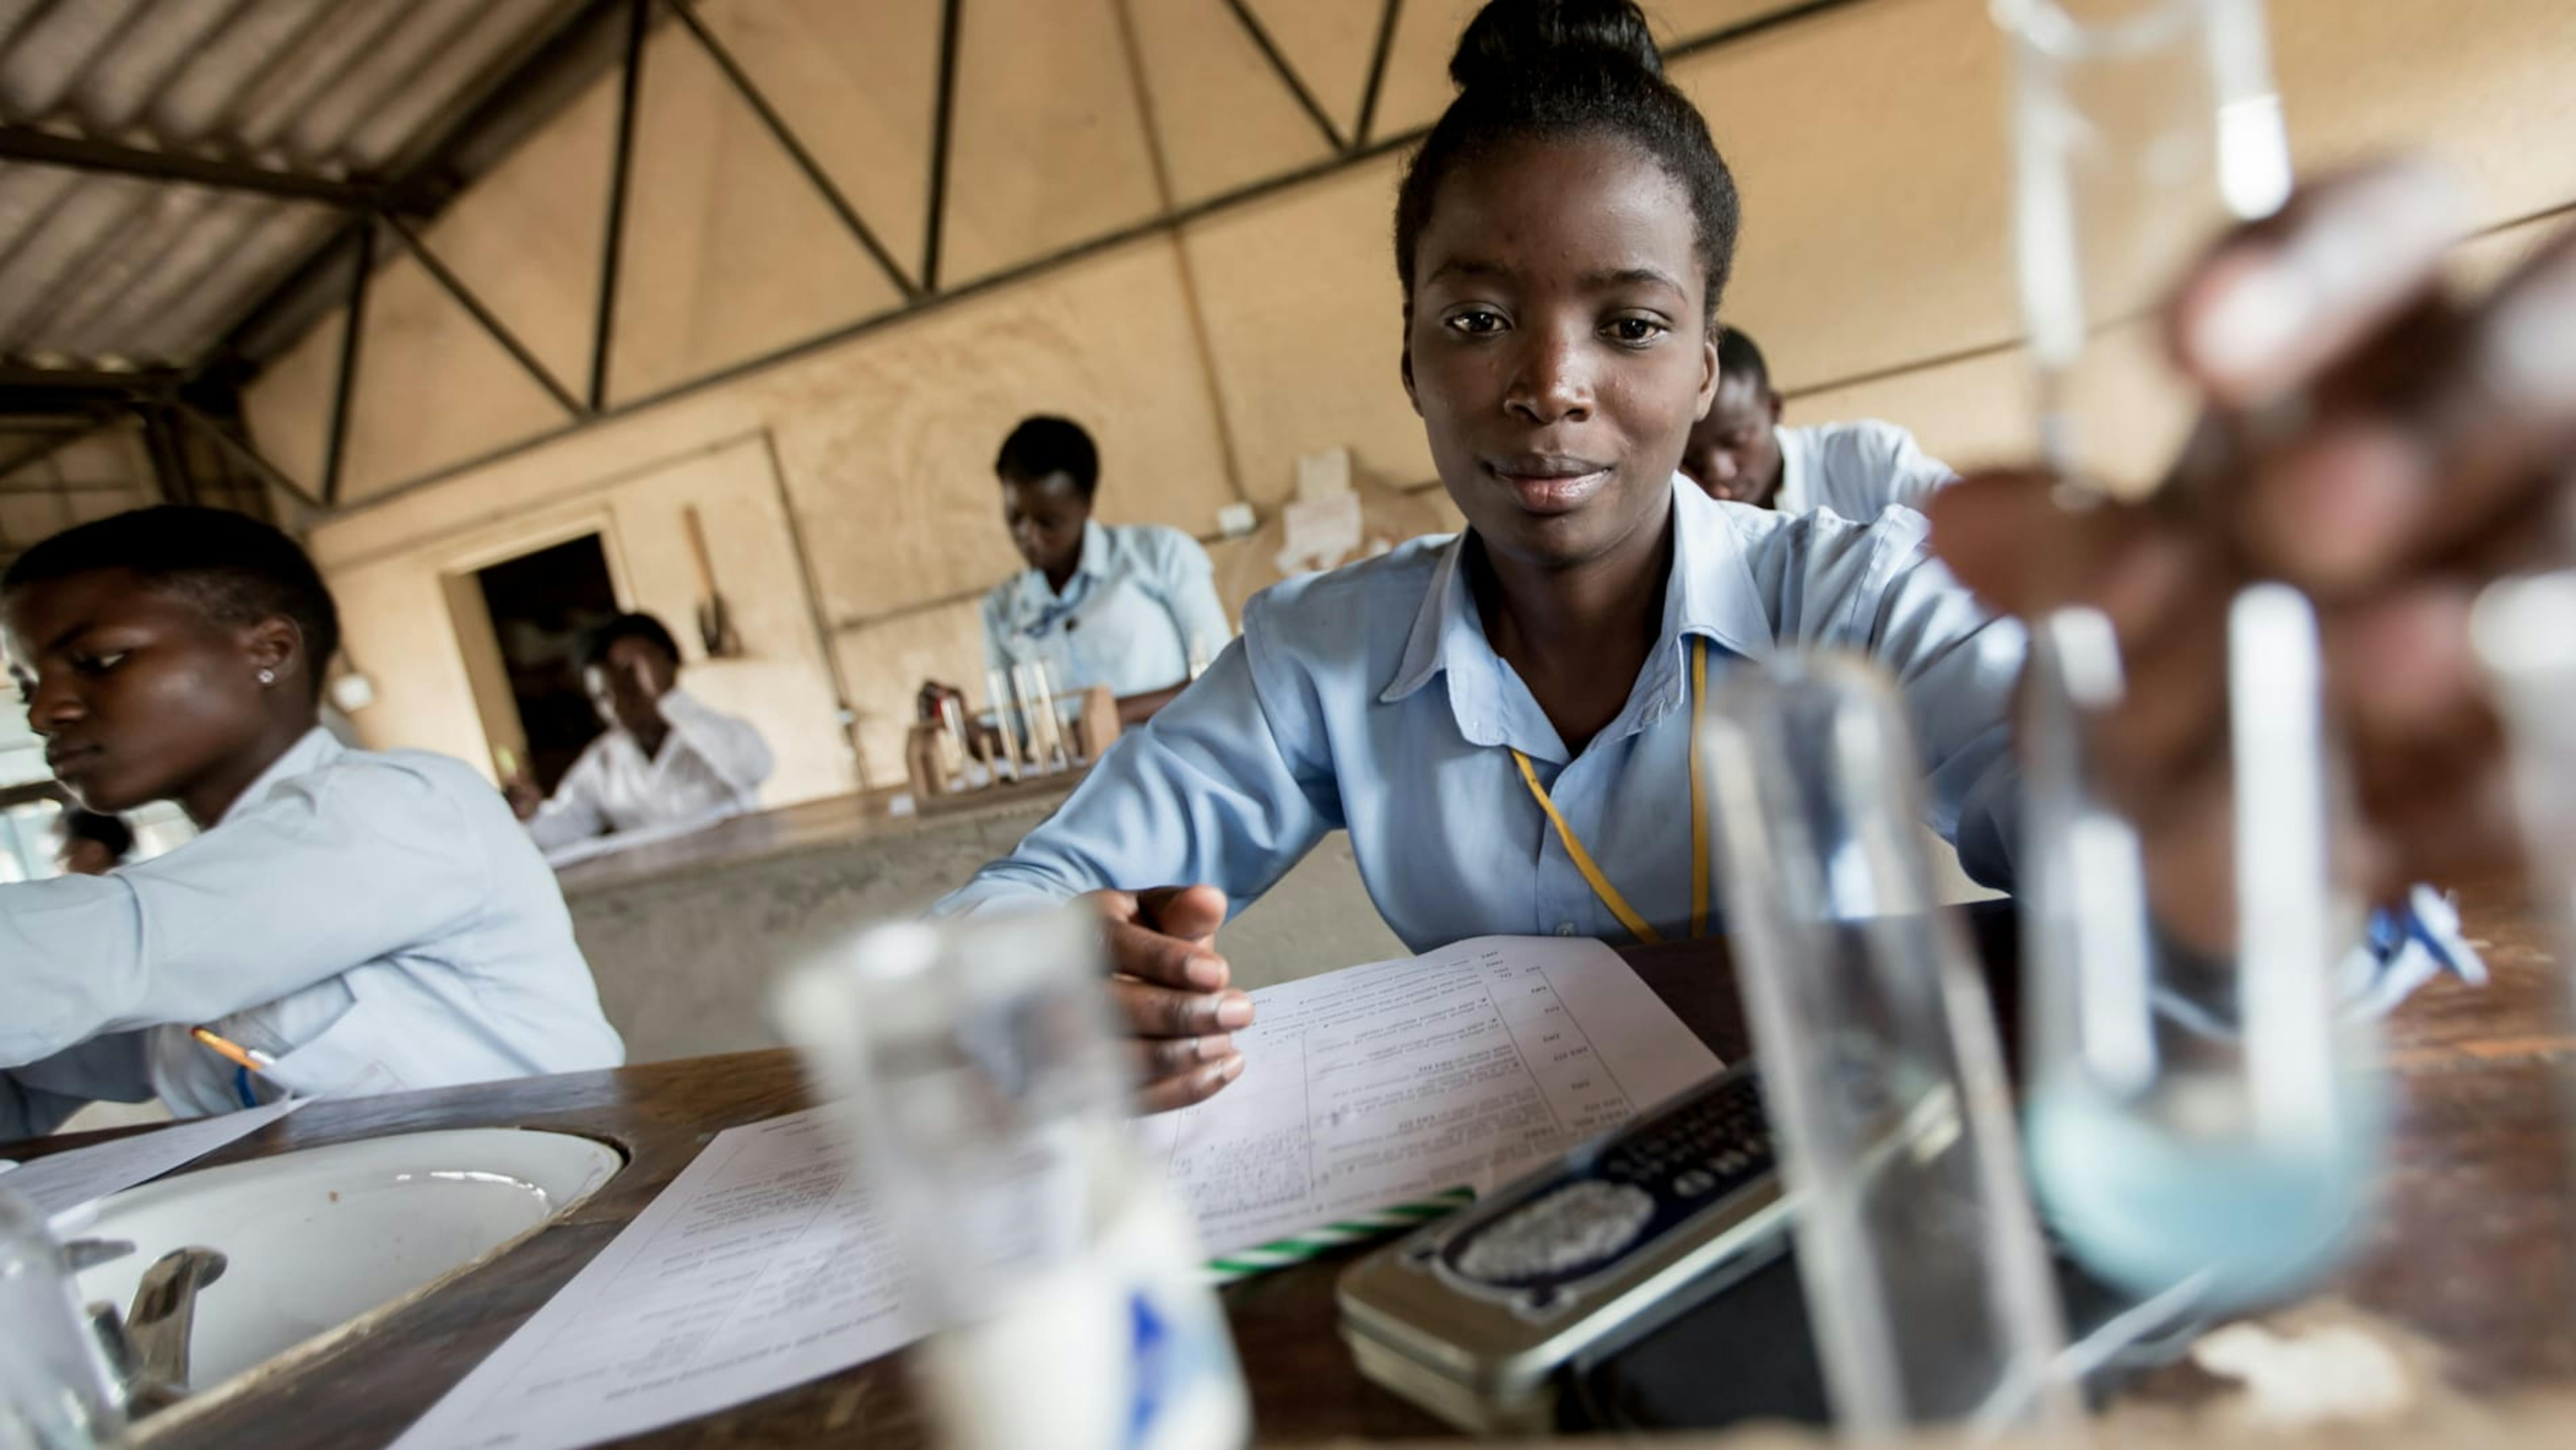 Zambia,una ragazza adolescente conduce un esperimento durante una lezione di chimica.